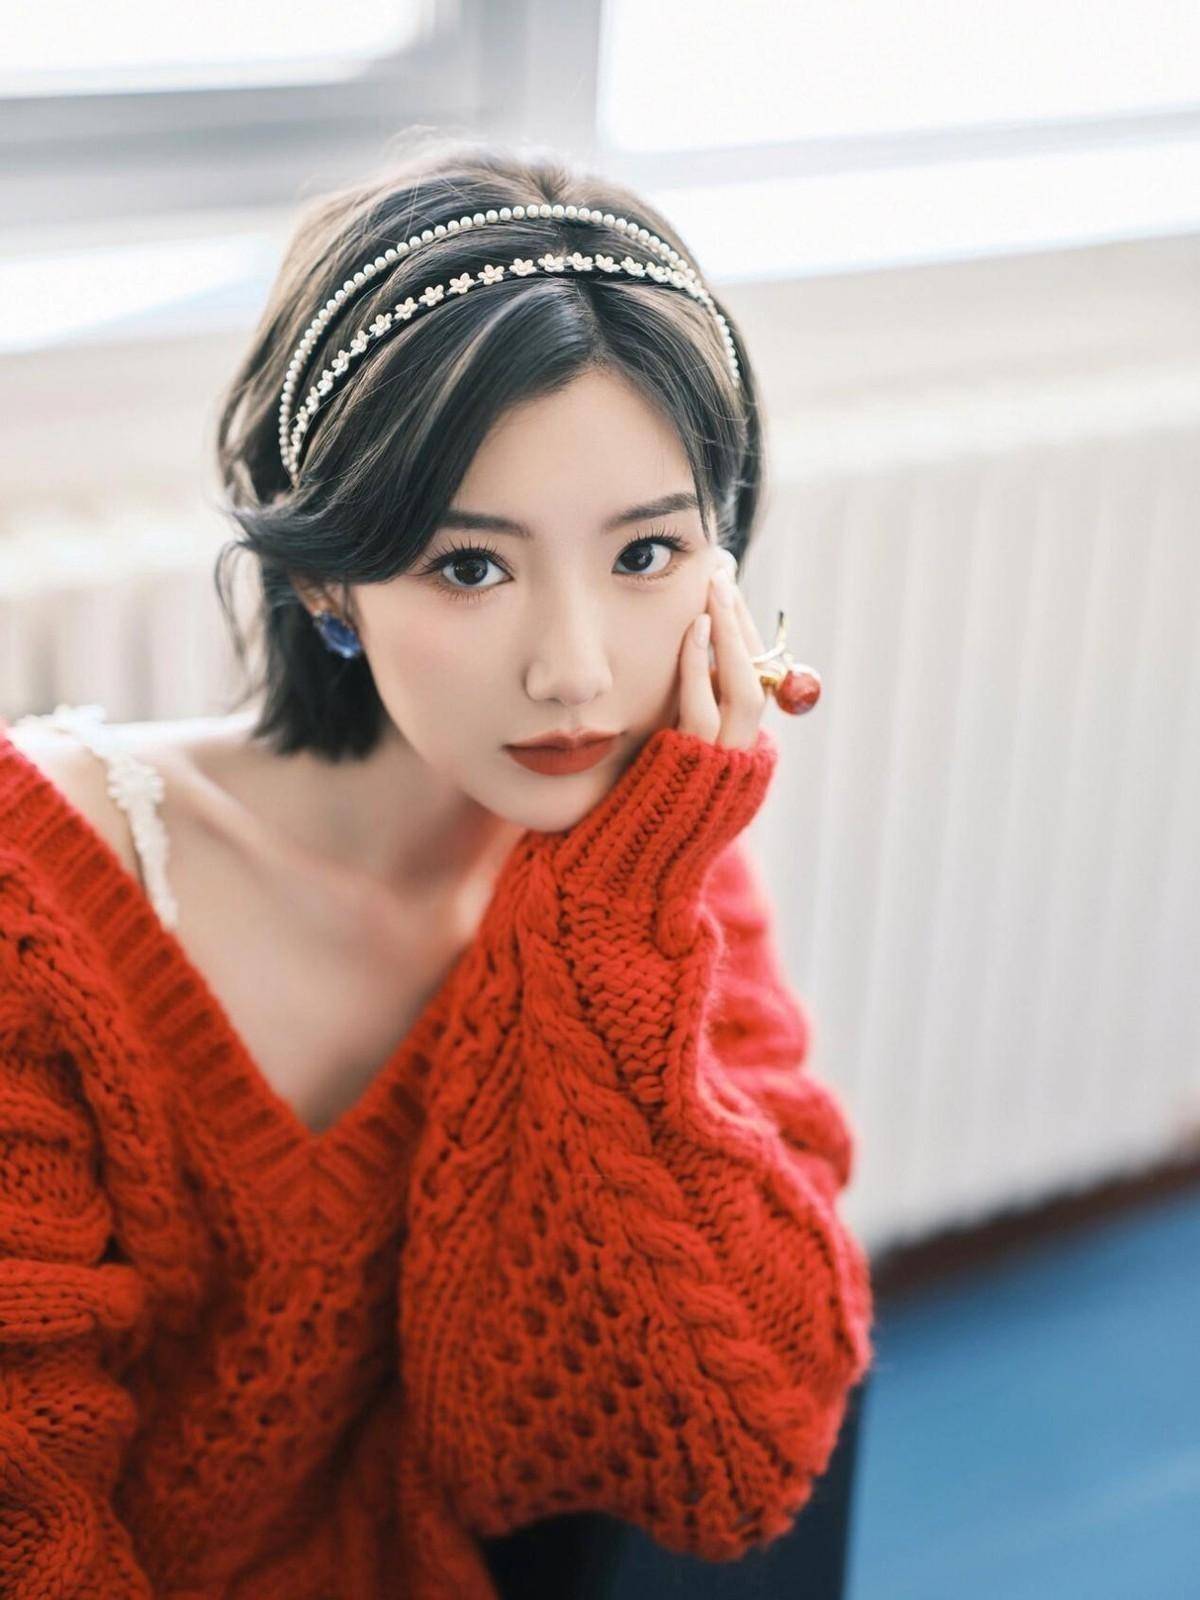 毛晓彤新年穿搭火了:红毛衣 小白裙 短发,洋气又显贵